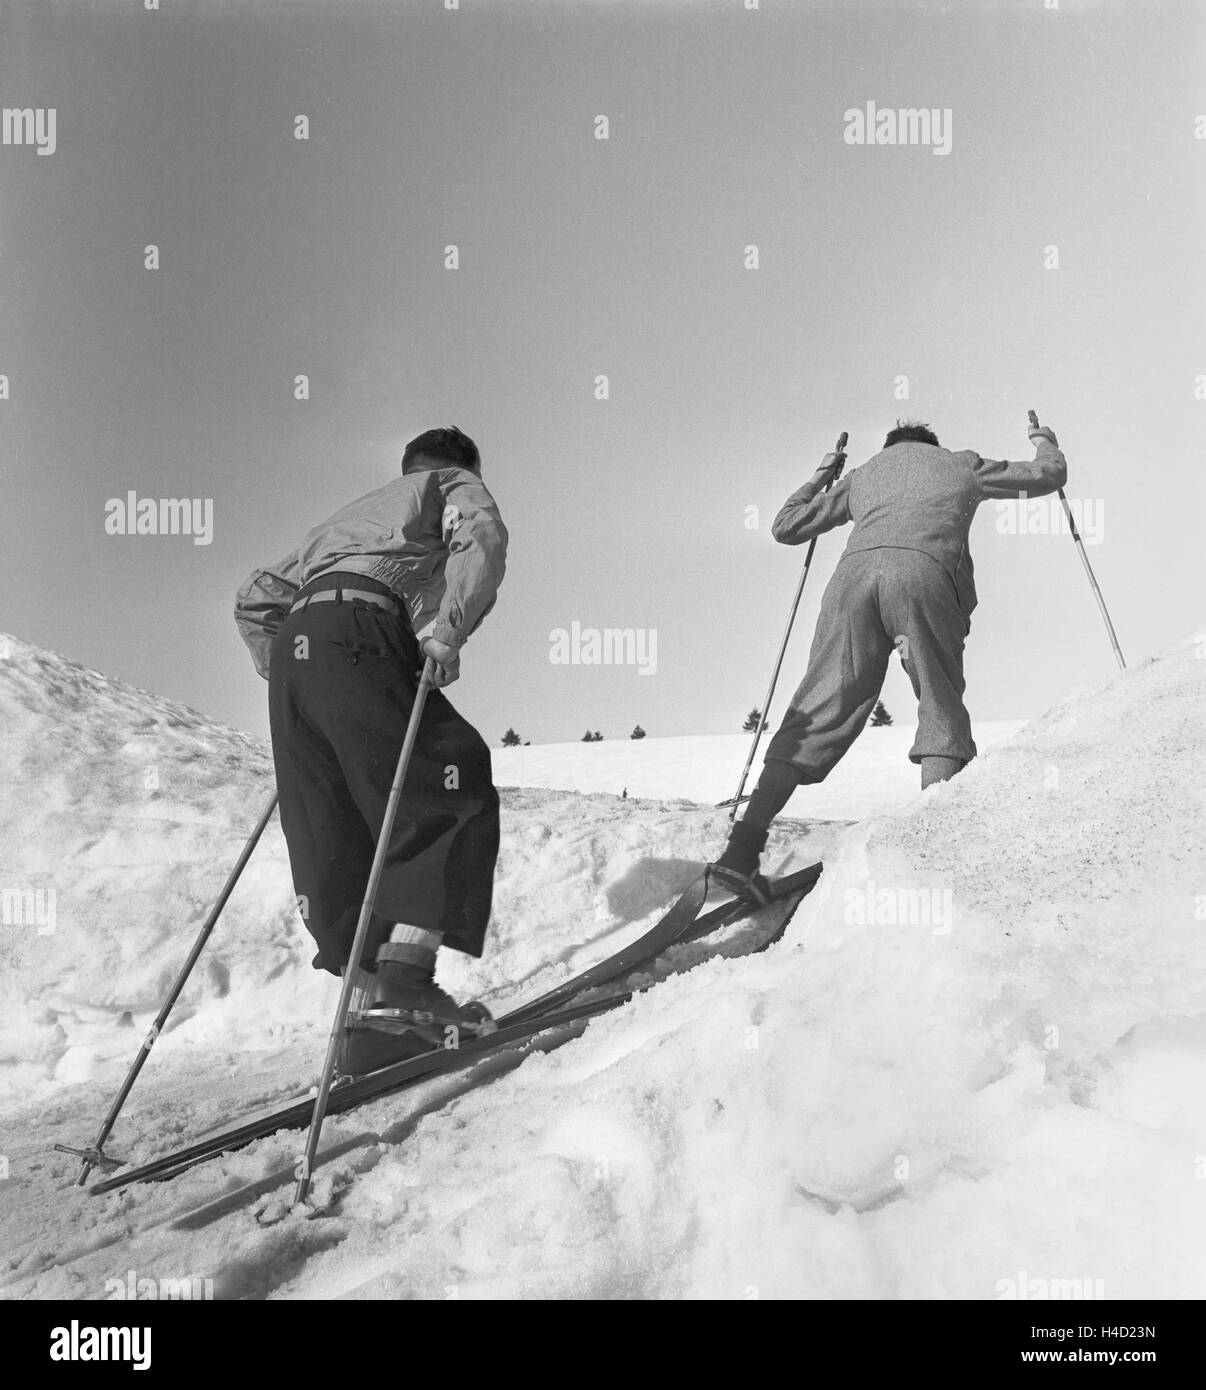 Skigebiet am Feldberg im Schwarzwald, Deutsches Reich 1930er Jahre. Ski region at Feldberg in the Black Forest, Germany 1930s. Stock Photo